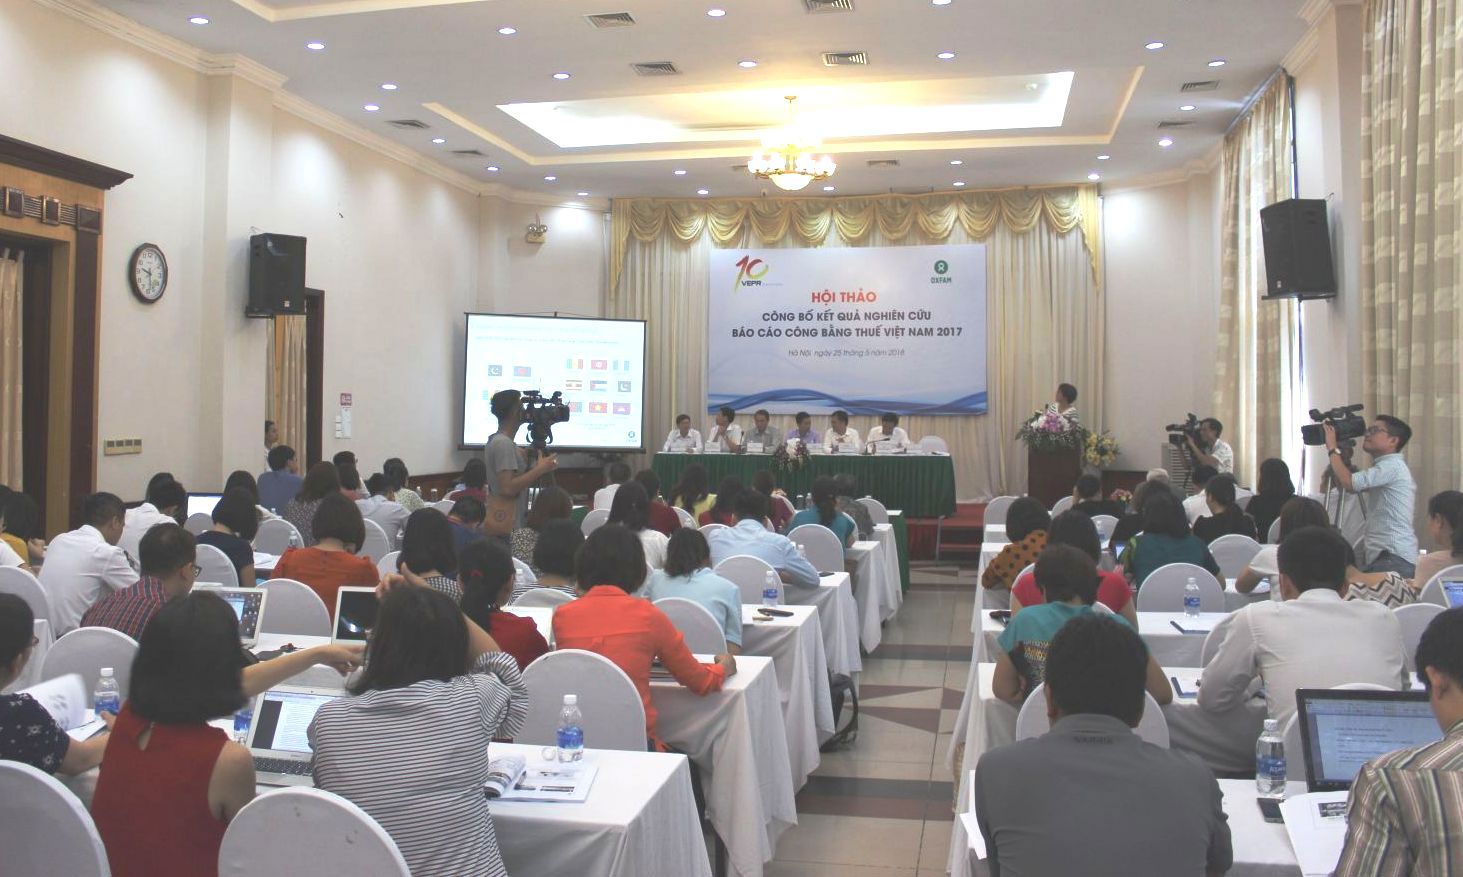 Hội thảo Công bố kết quả nghiên cứu Báo cáo Công bằng thuế Việt Nam 2017